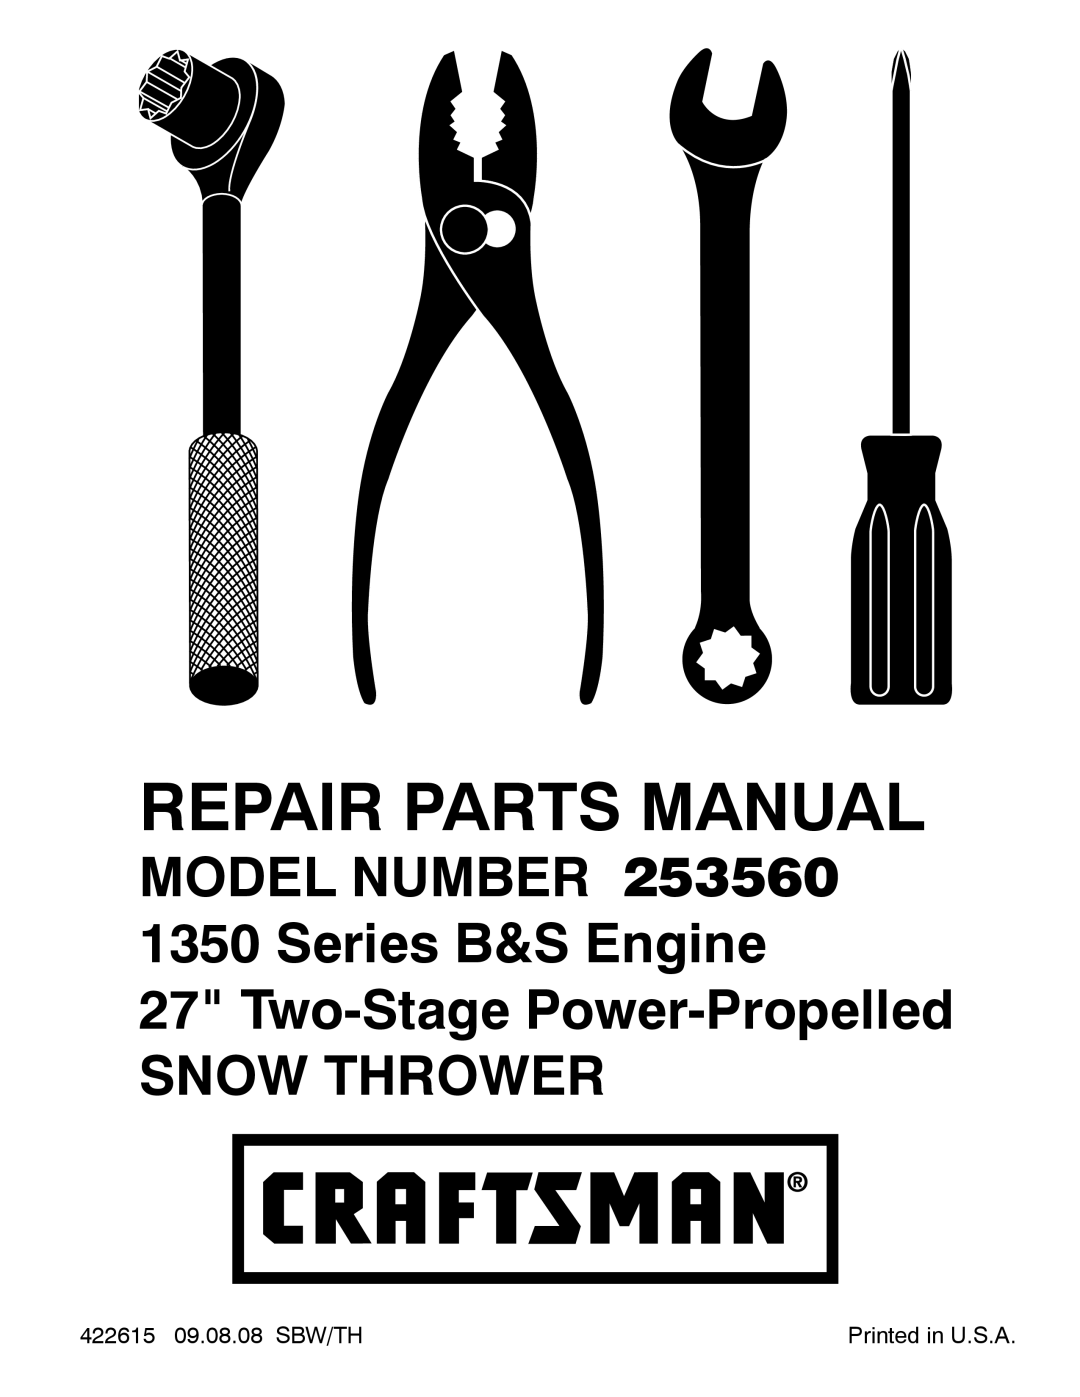 Craftsman 253560 manual 422615 09.08.08 SBW/TH, Repair Parts Manual, Snow Thrower 